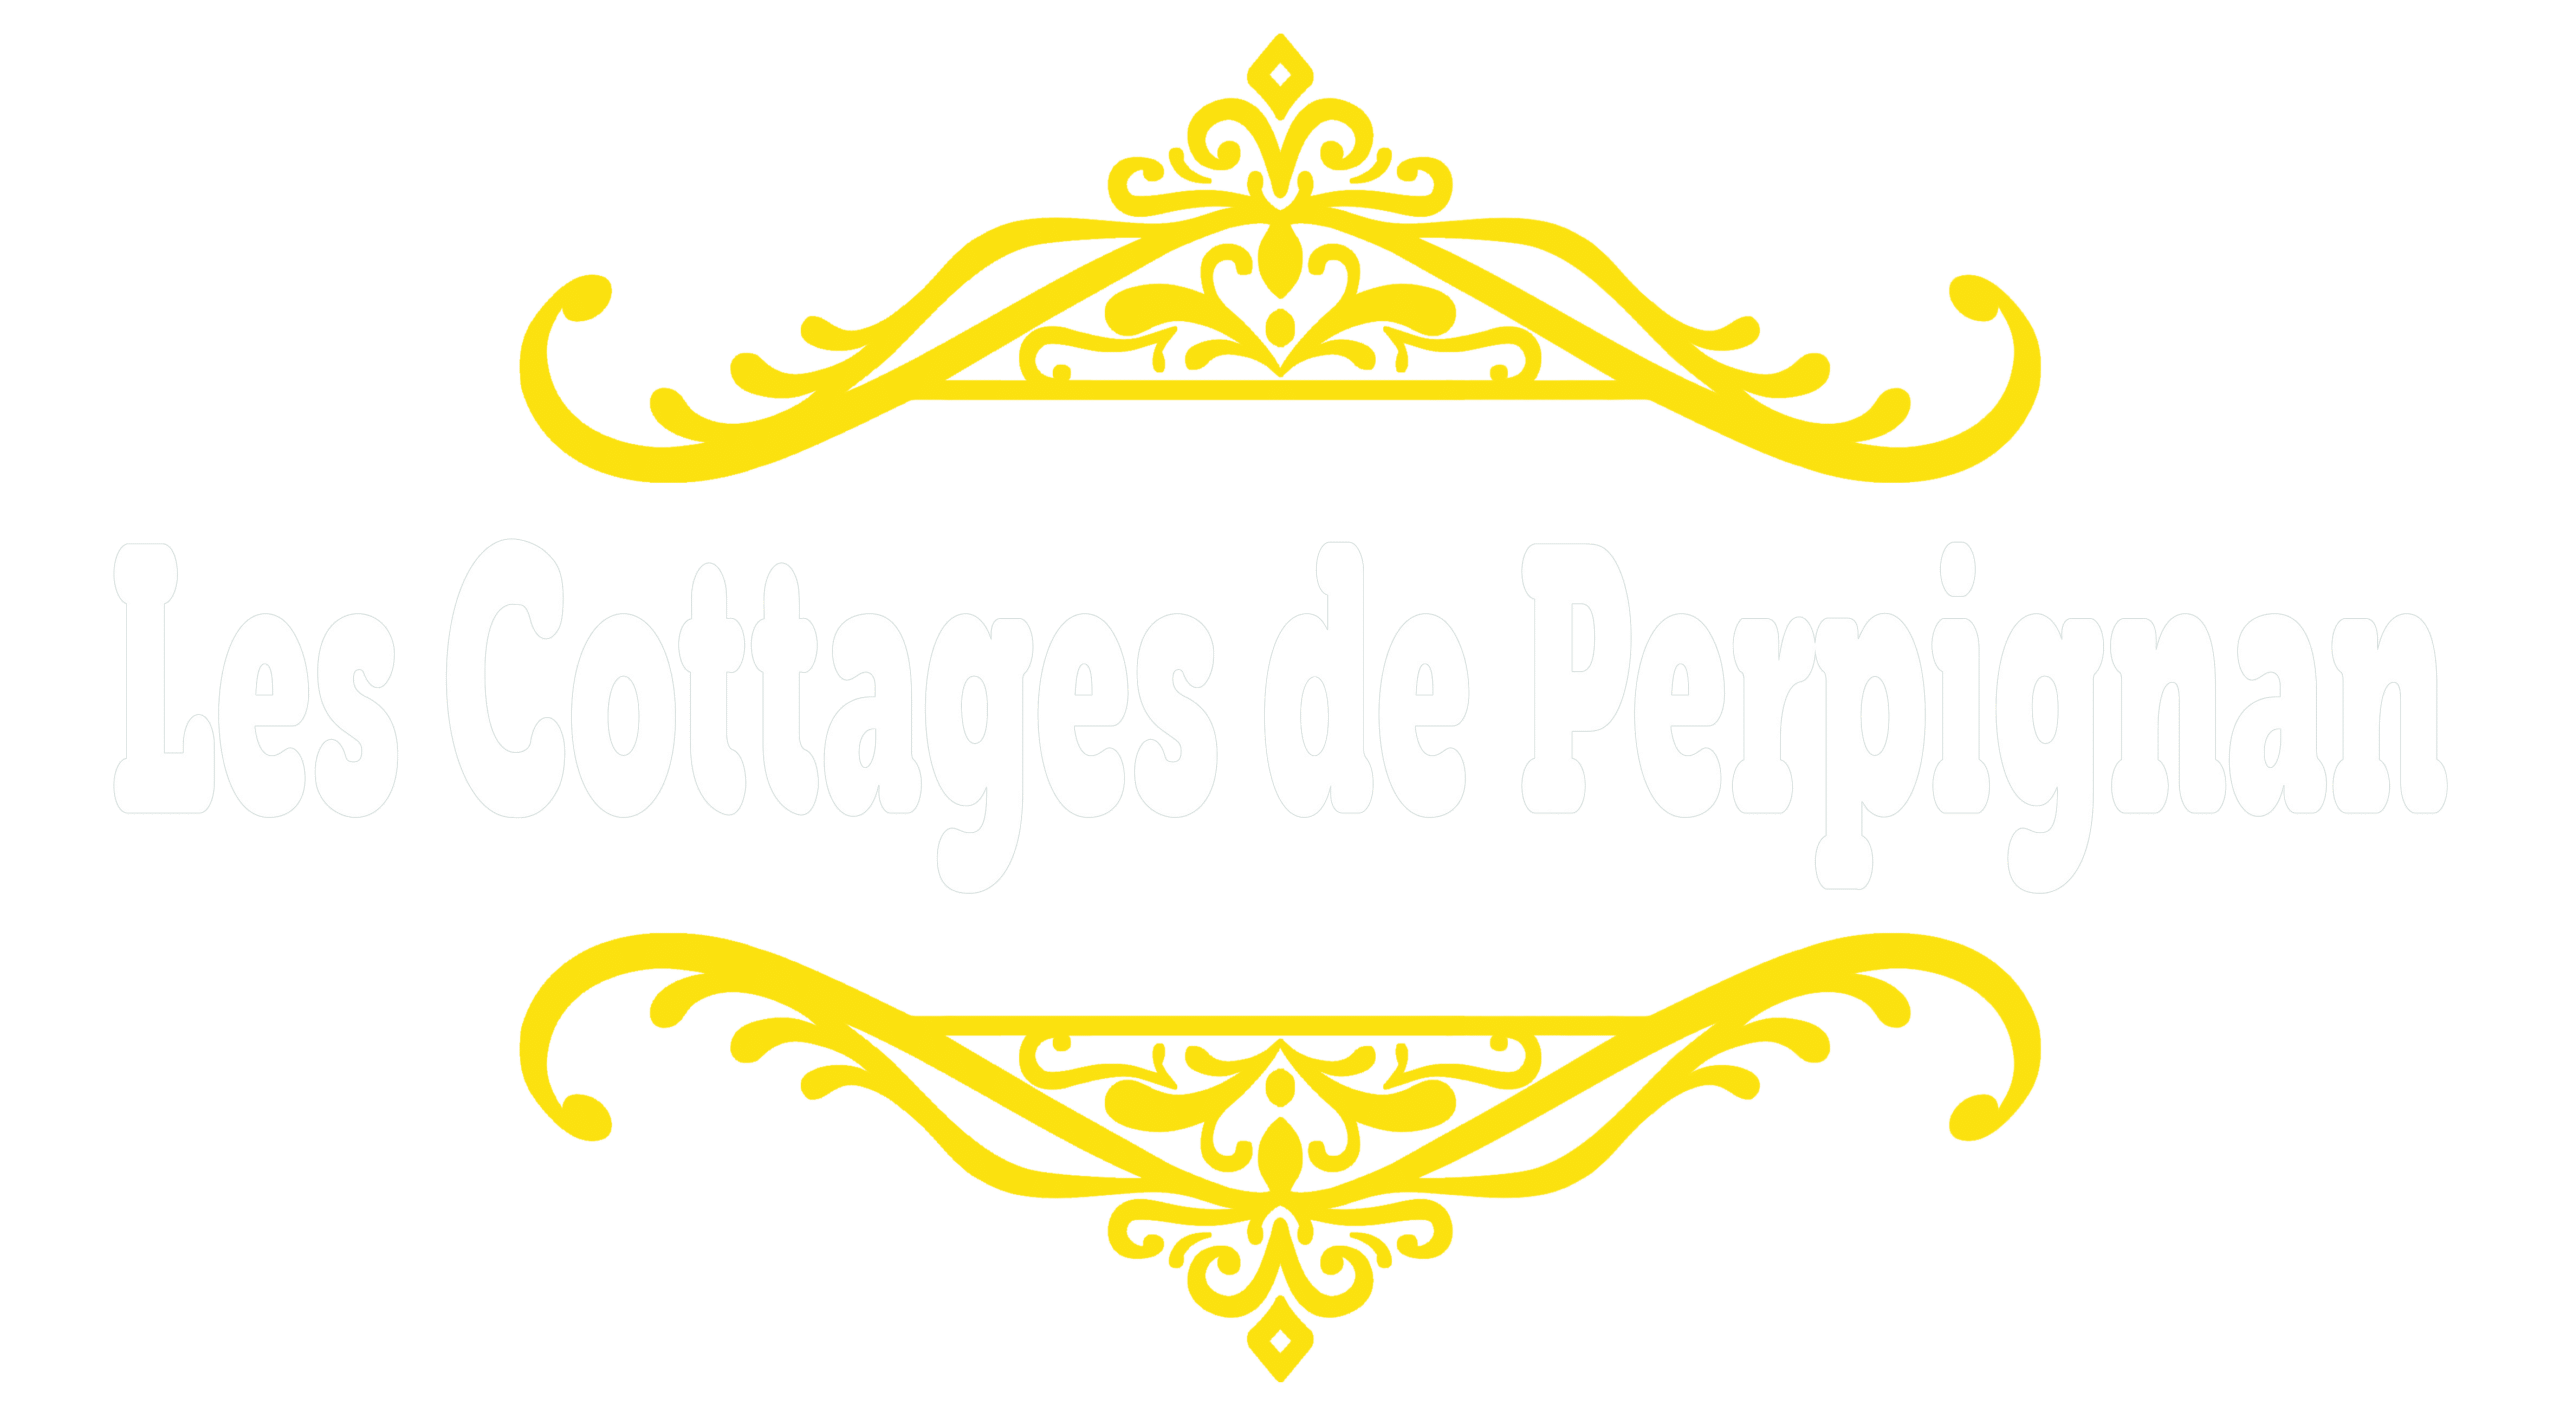 Les Cottages de Perpignan